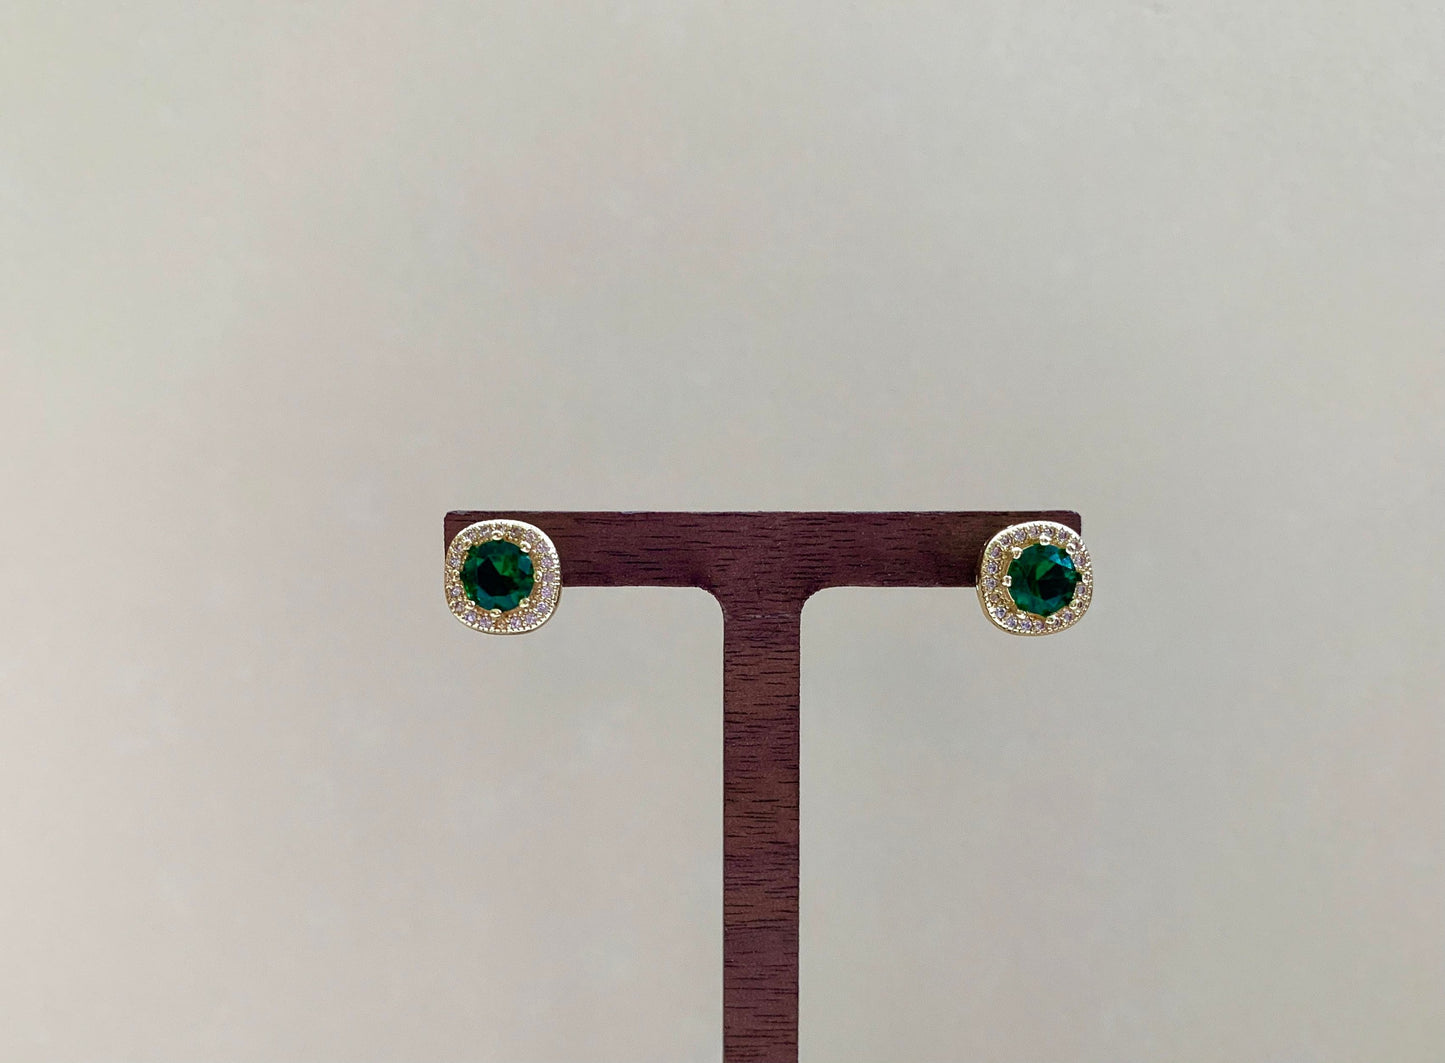 Dainty 14K Gold Plated Green Zircon Stud Earrings